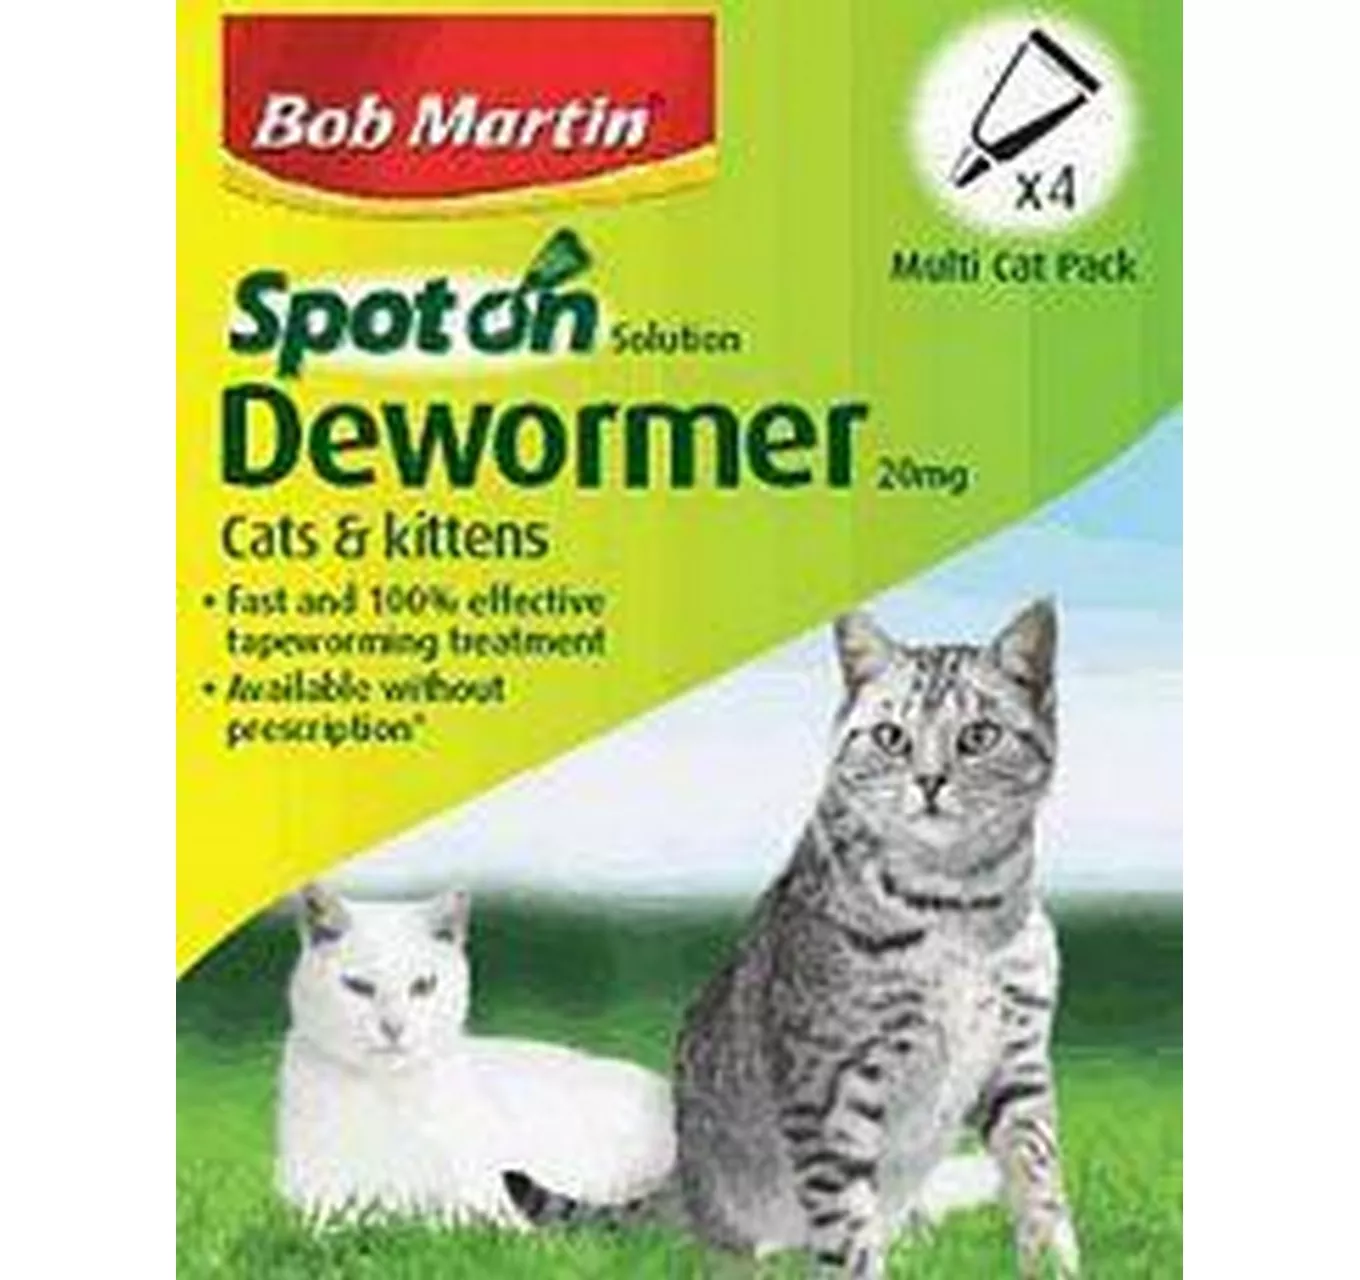 Dewormer Cat & Kitten 4 Tubes